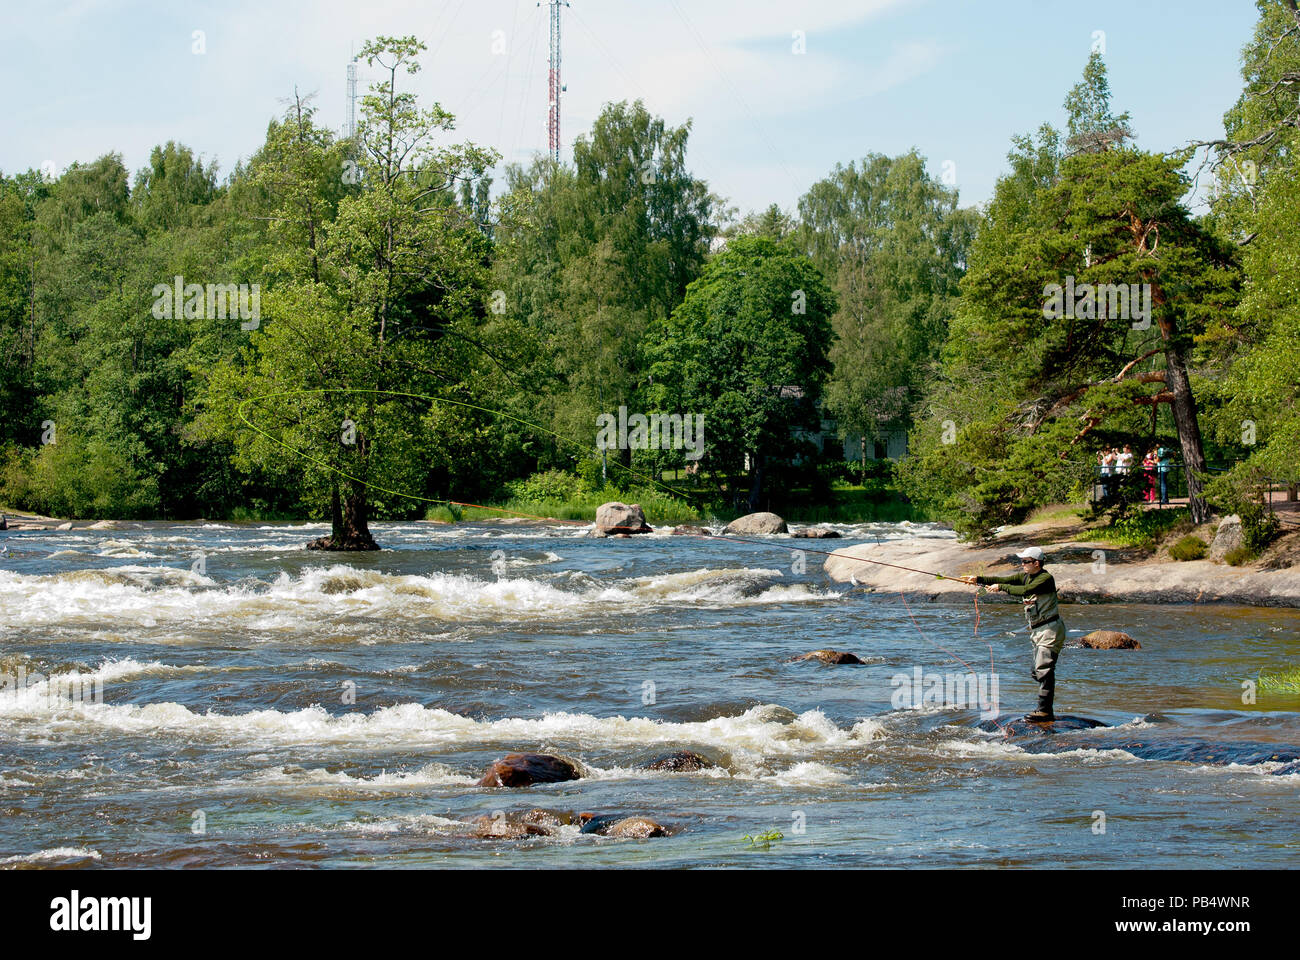 KOTKA, Finlandia - 26 giugno 2016: pescatore vicino Langinkoski veloce sul Fiume Kymi accanto all'imperatore russo Alexander III lodge di pesca. Foto Stock